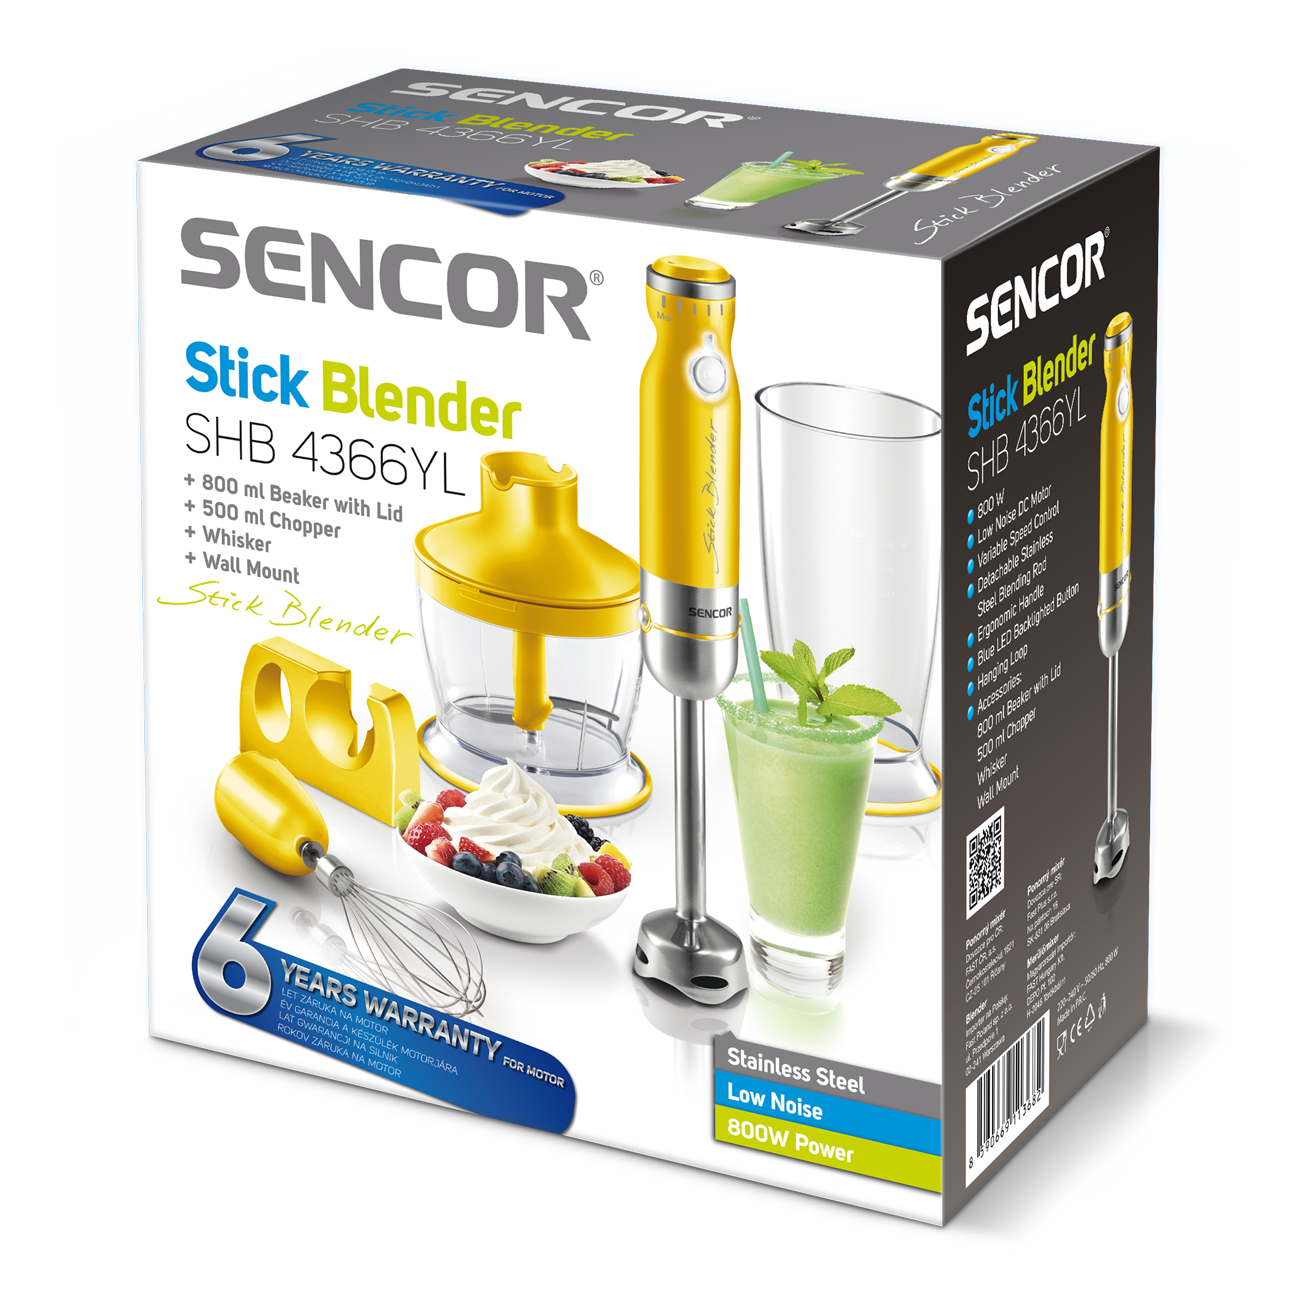 SENCOR Hand Blender SHB4366YL